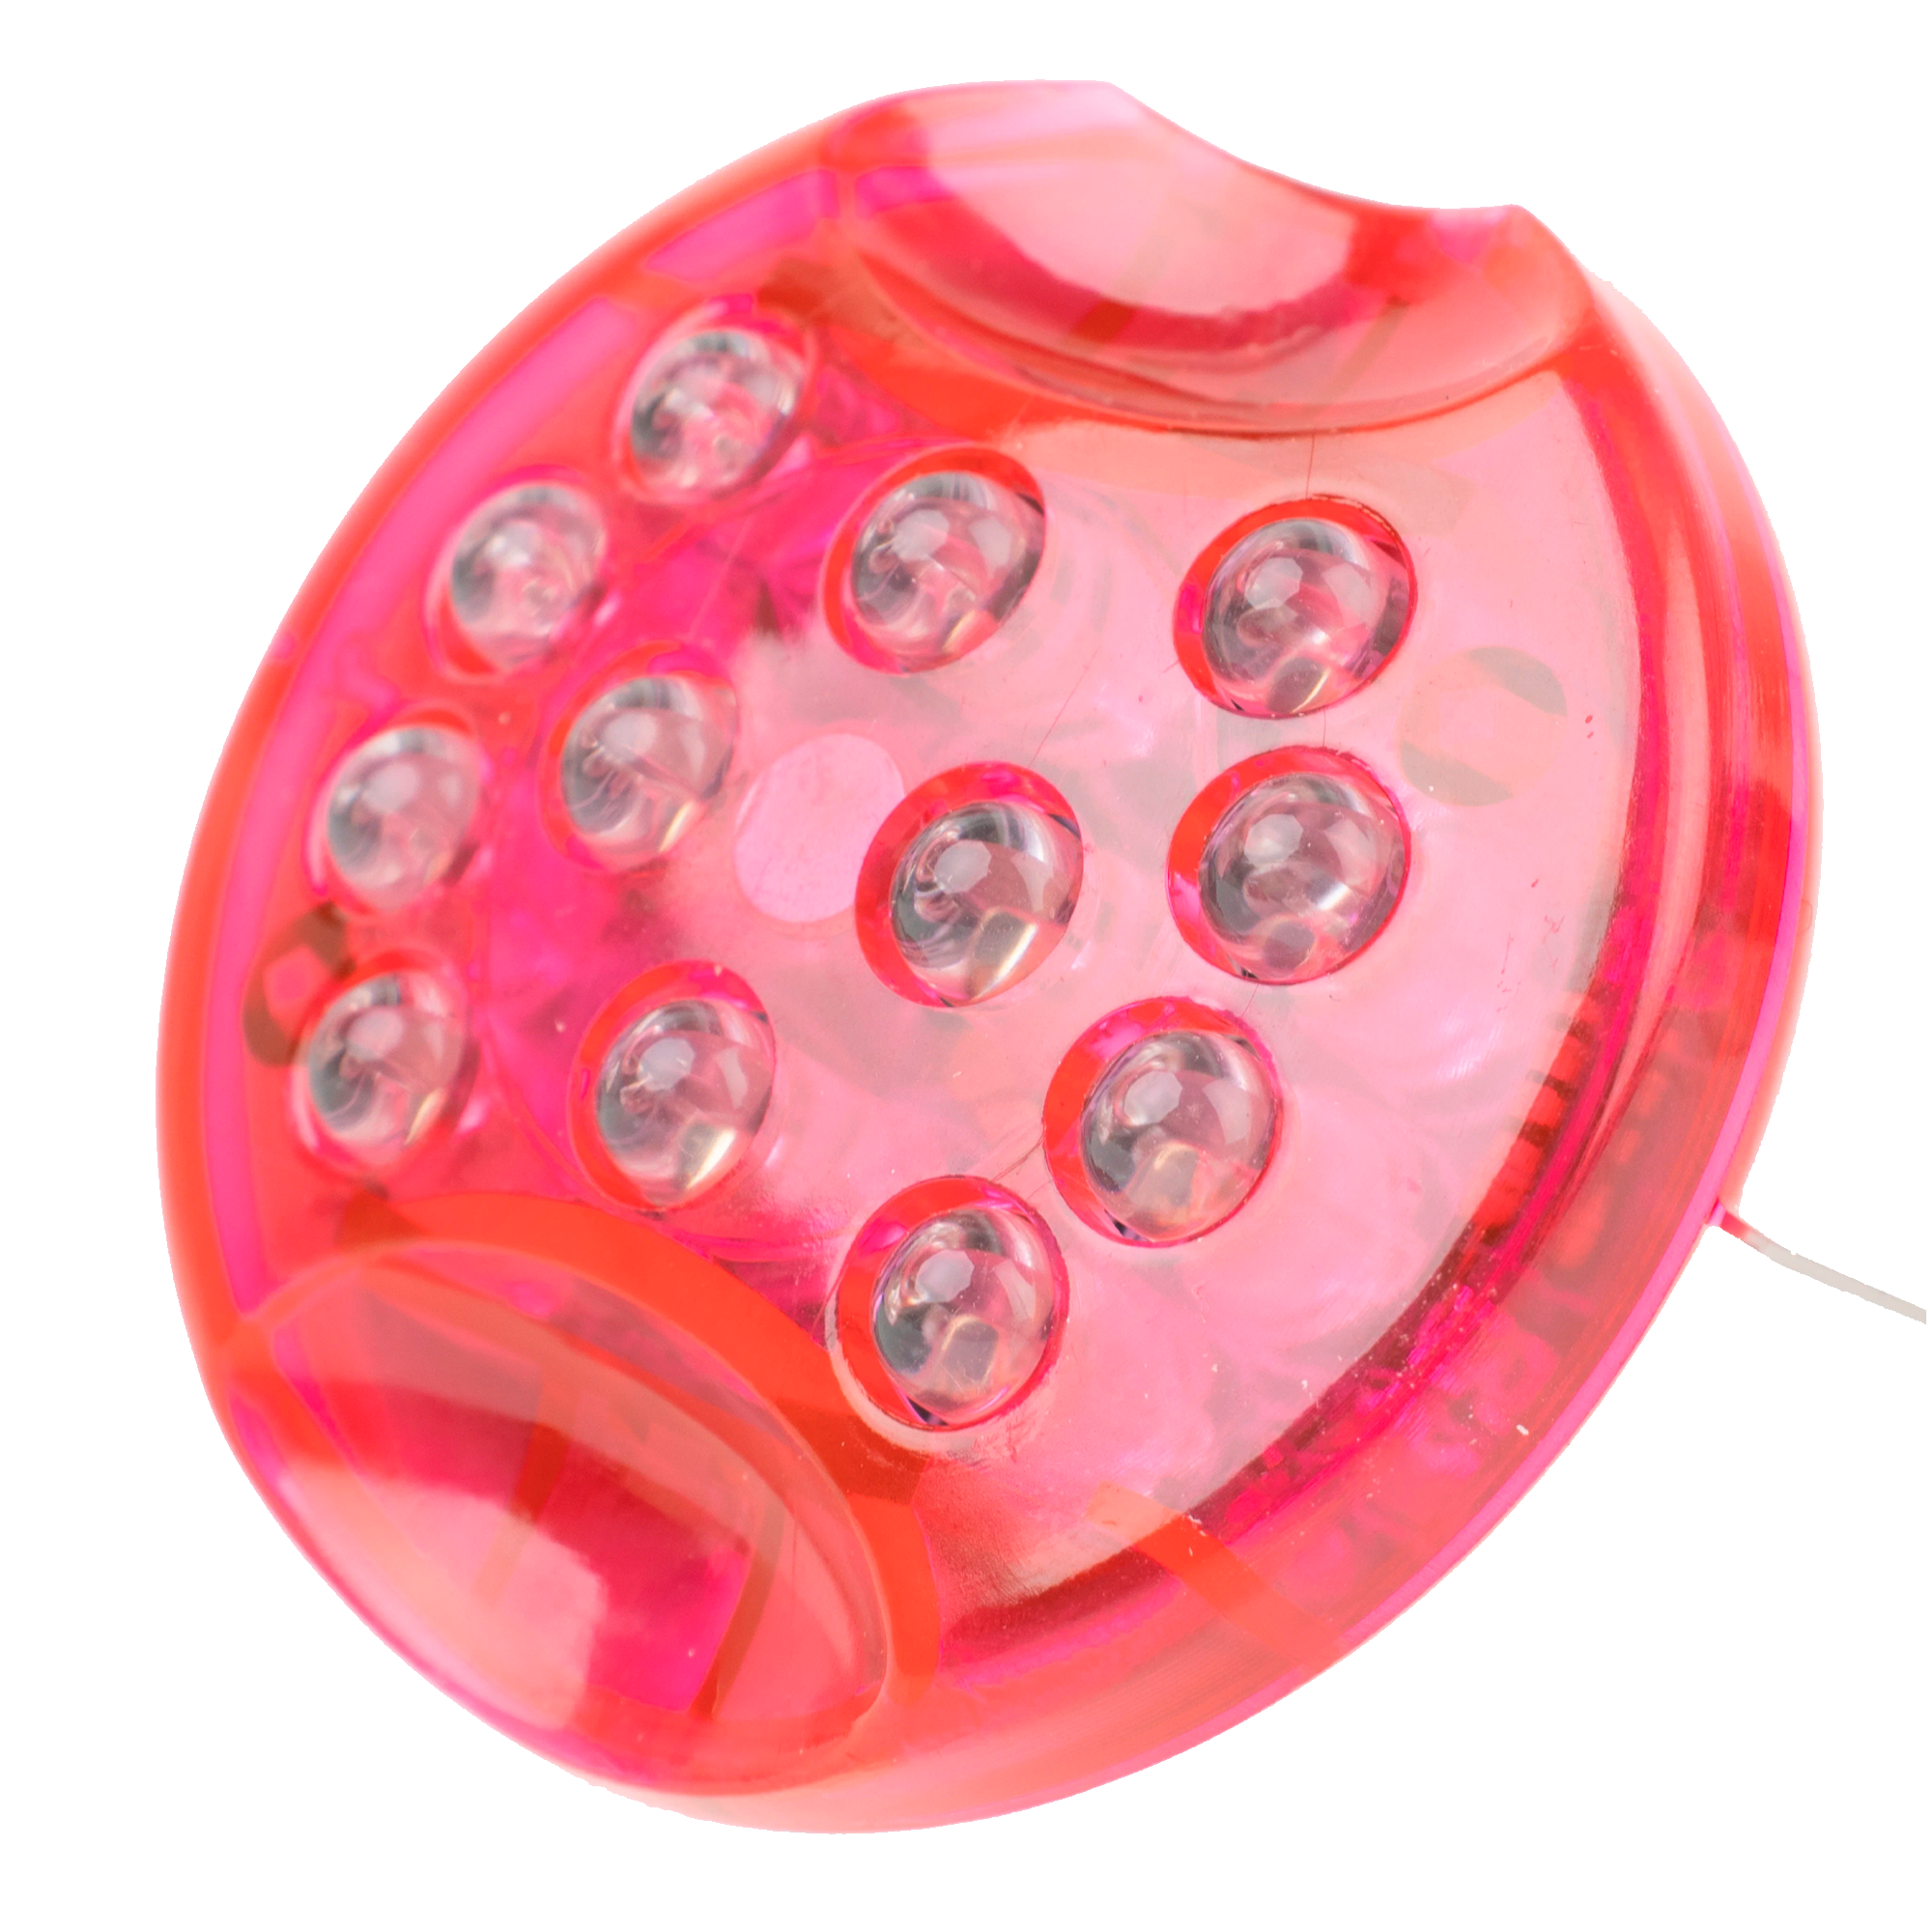 Физиотерапевтический прибор Невотон Красная лампа медицинская невотон для лечения суставов аппарат для фототерапии - фото 6